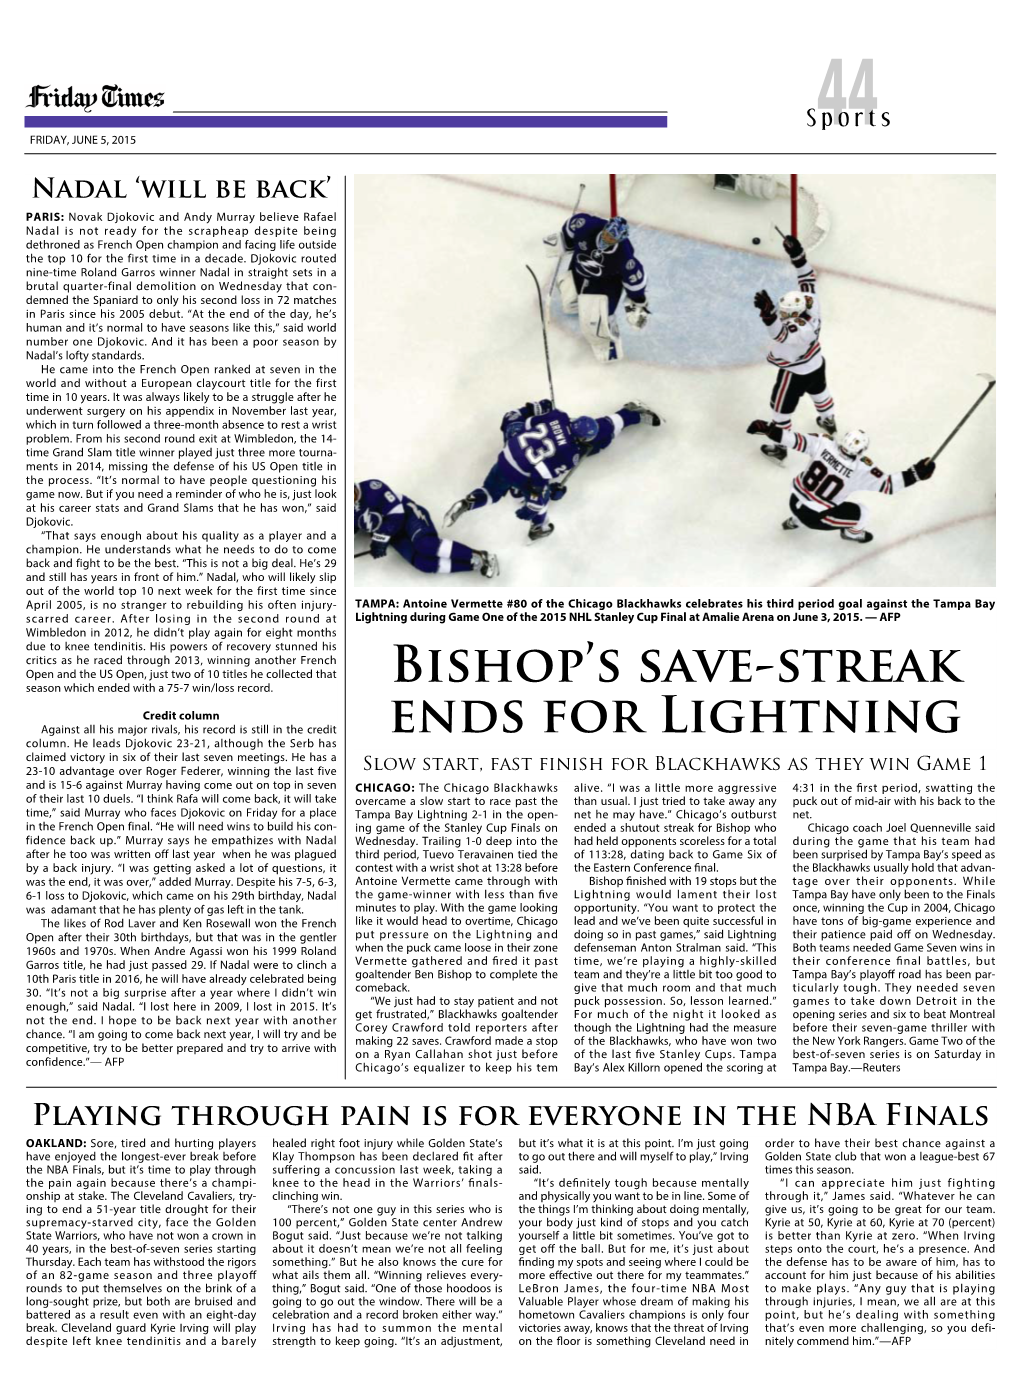 Bishop's Save-Streak Ends for Lightning